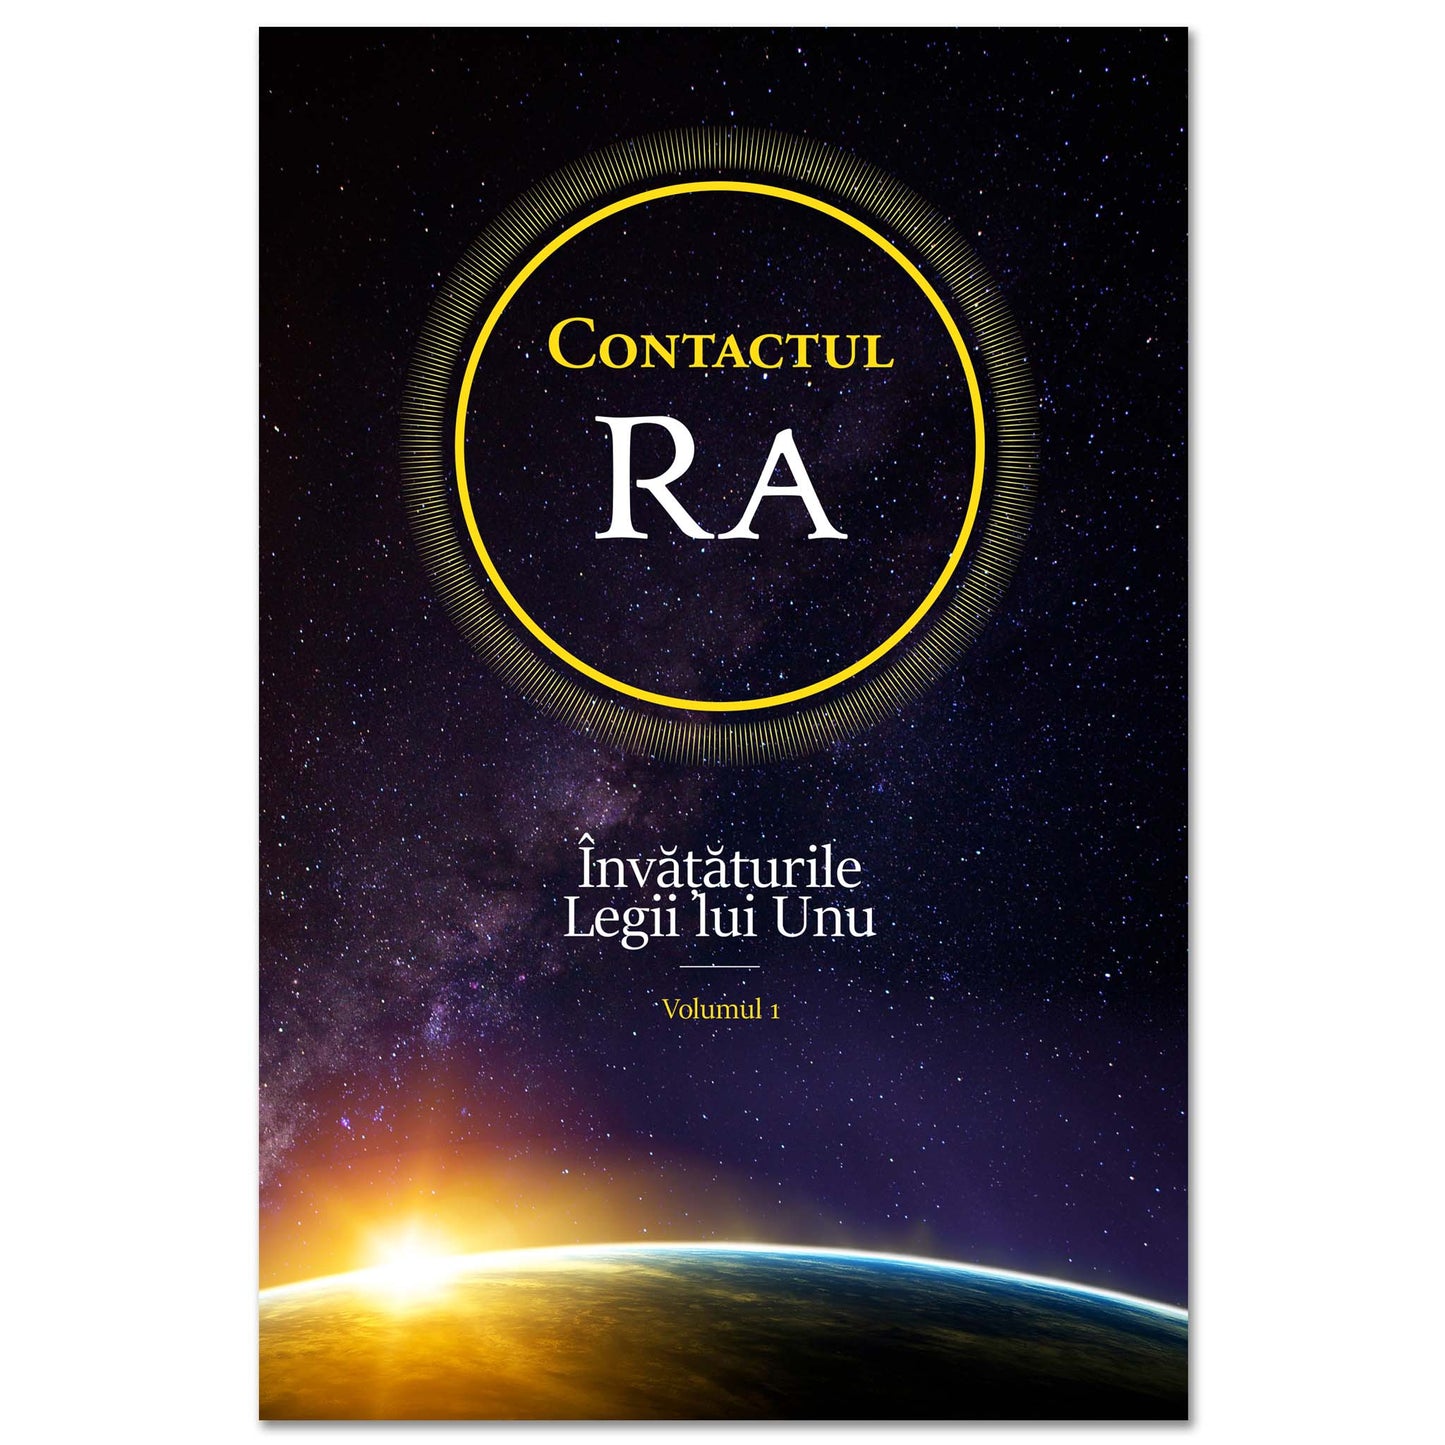 Contactul Ra: Învățăturile Legi lui Unu - Volumul 1